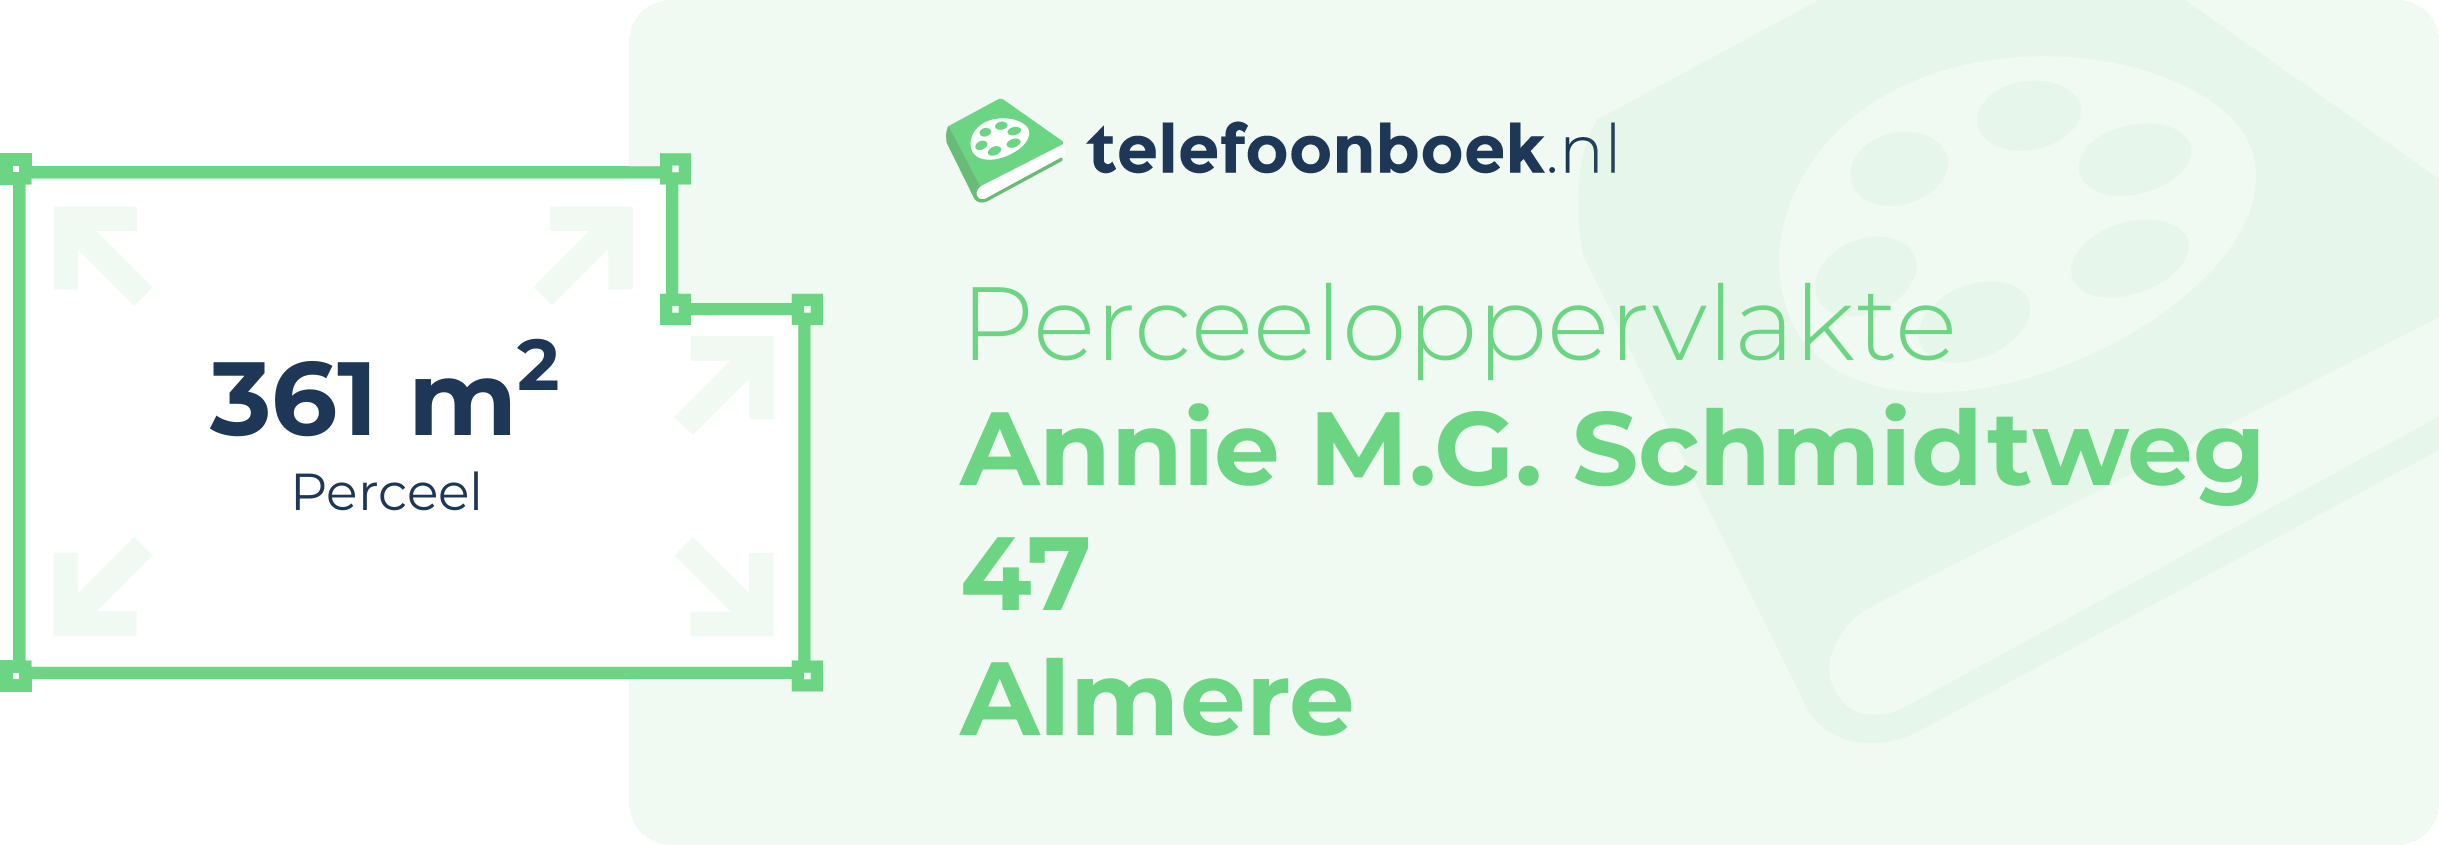 Perceeloppervlakte Annie M.G. Schmidtweg 47 Almere